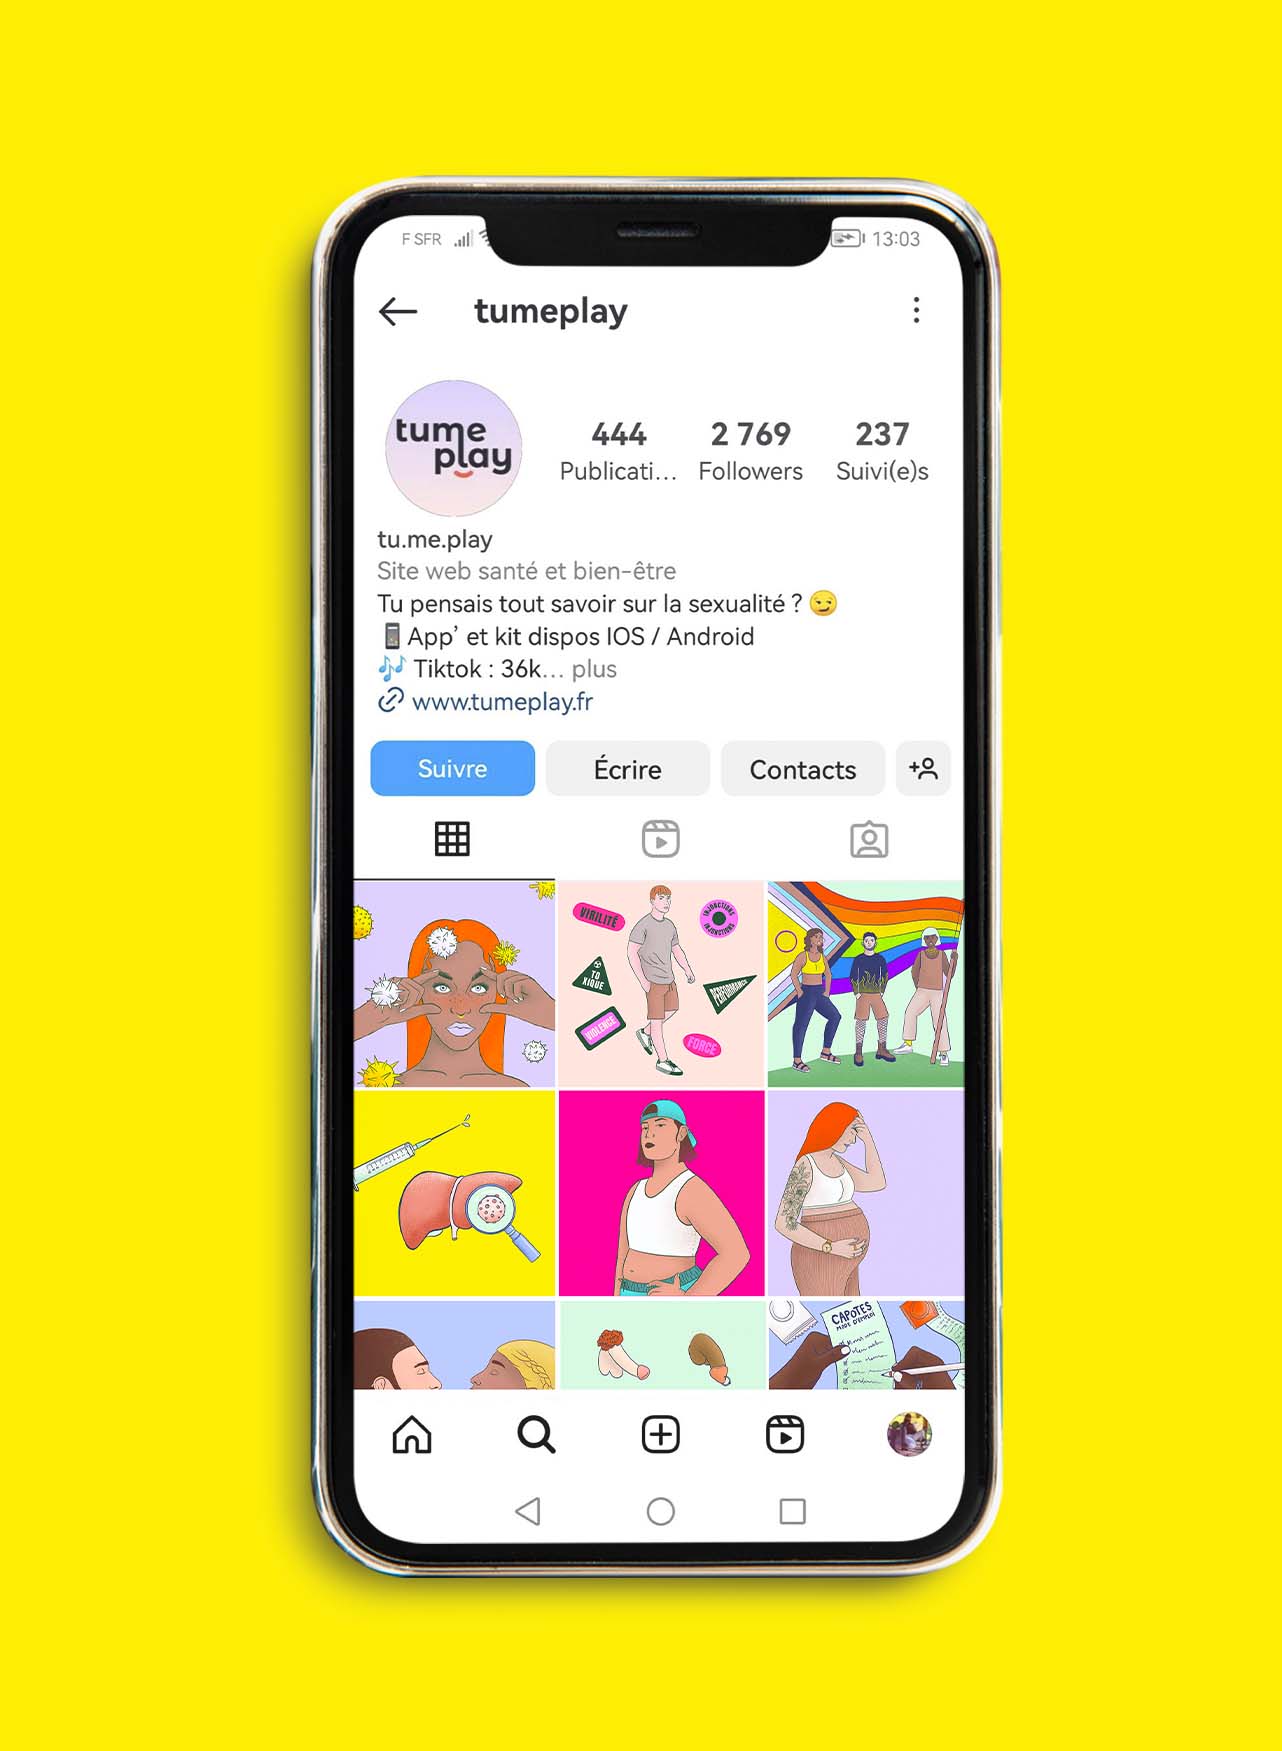 Écran de téléphone affichant page Instagram compte tumeplay pour de la prévention en santé sexuelle. Les posts sont illustrés et colorés.